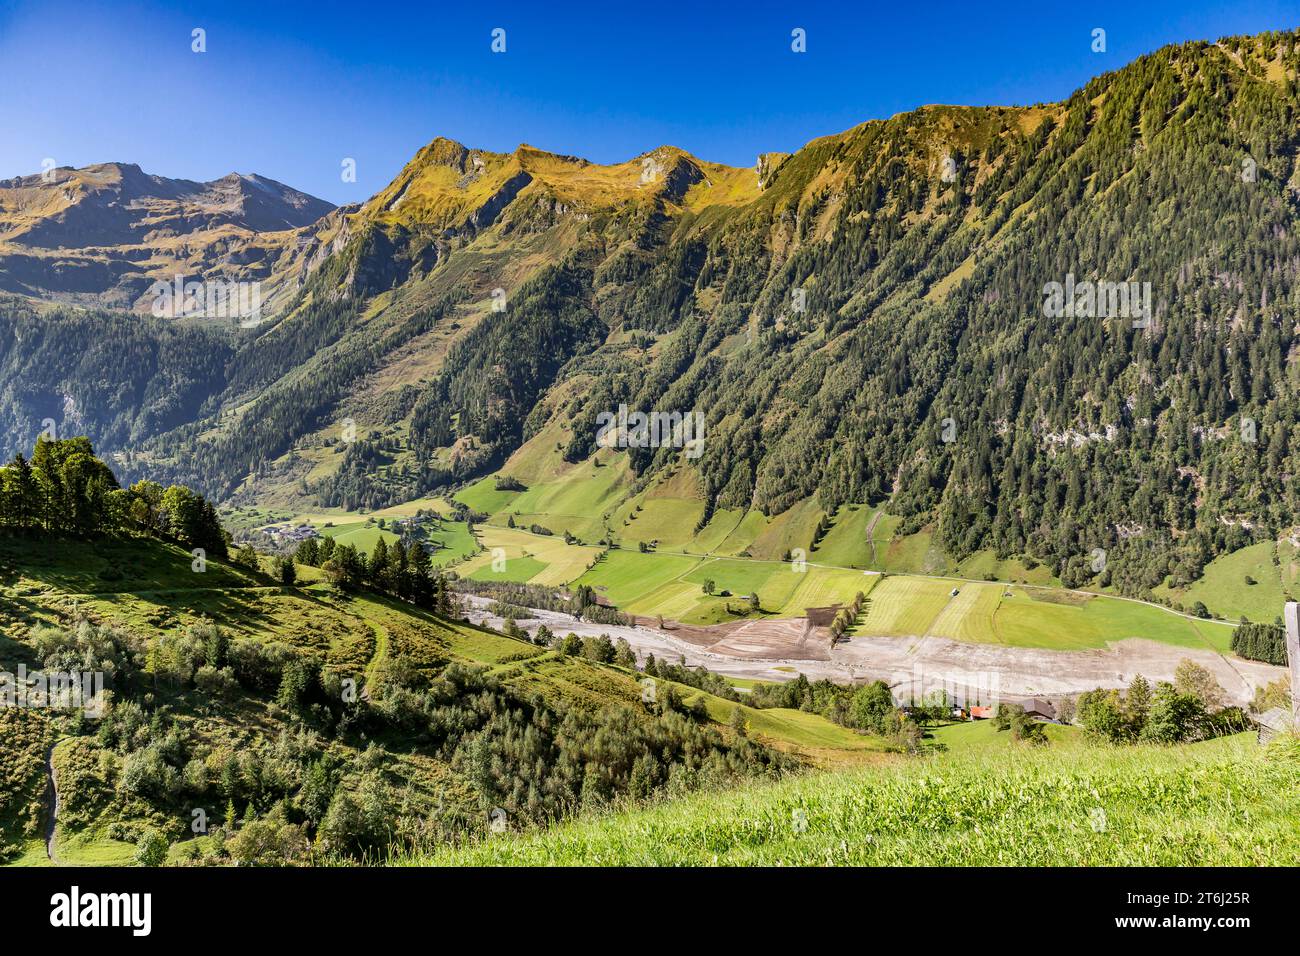 Vue de Fröstlbergweg sur le paysage de montagne, Ritterkopf, 3006 m, Edlenkopf, 2924 m, Schafkarkopf, 2727 m, Rauris, Raurisertal, Pinzgau, Salzburger Land, Autriche Banque D'Images